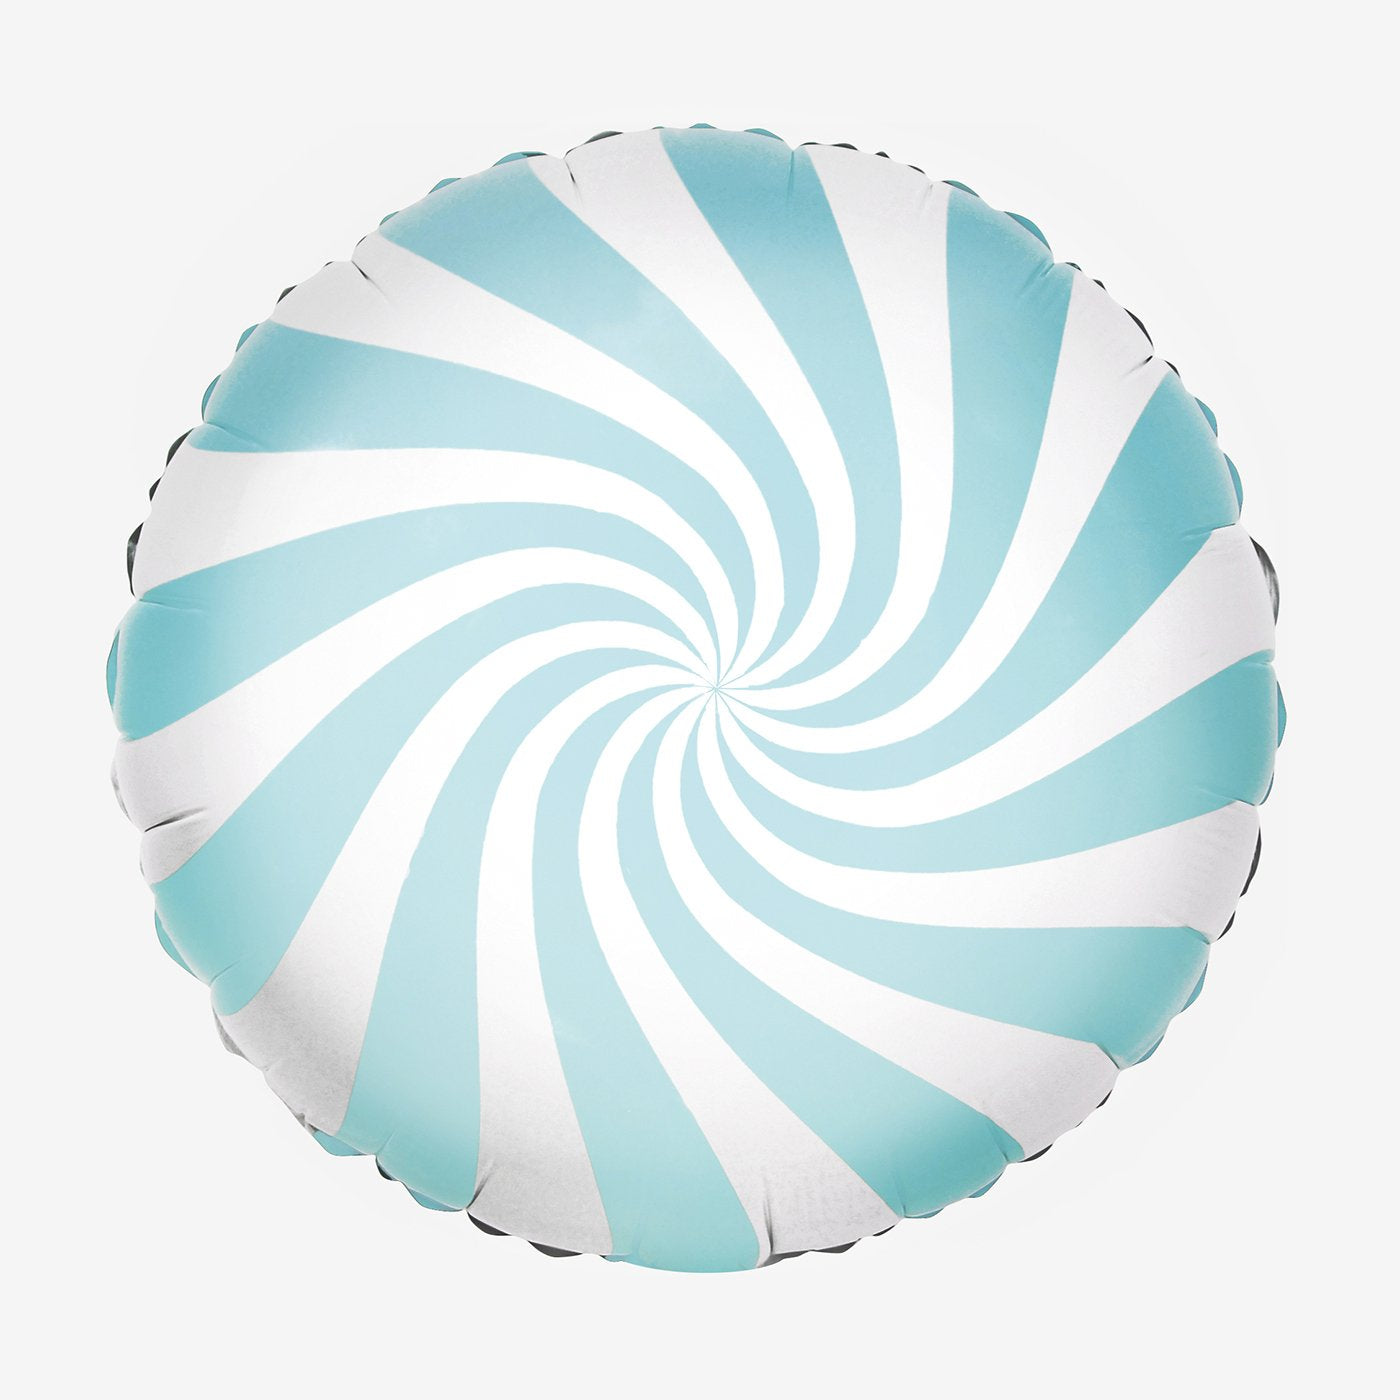 Globo de helio en espiral de caramelo azul claro para decoración de baby shower de niño.